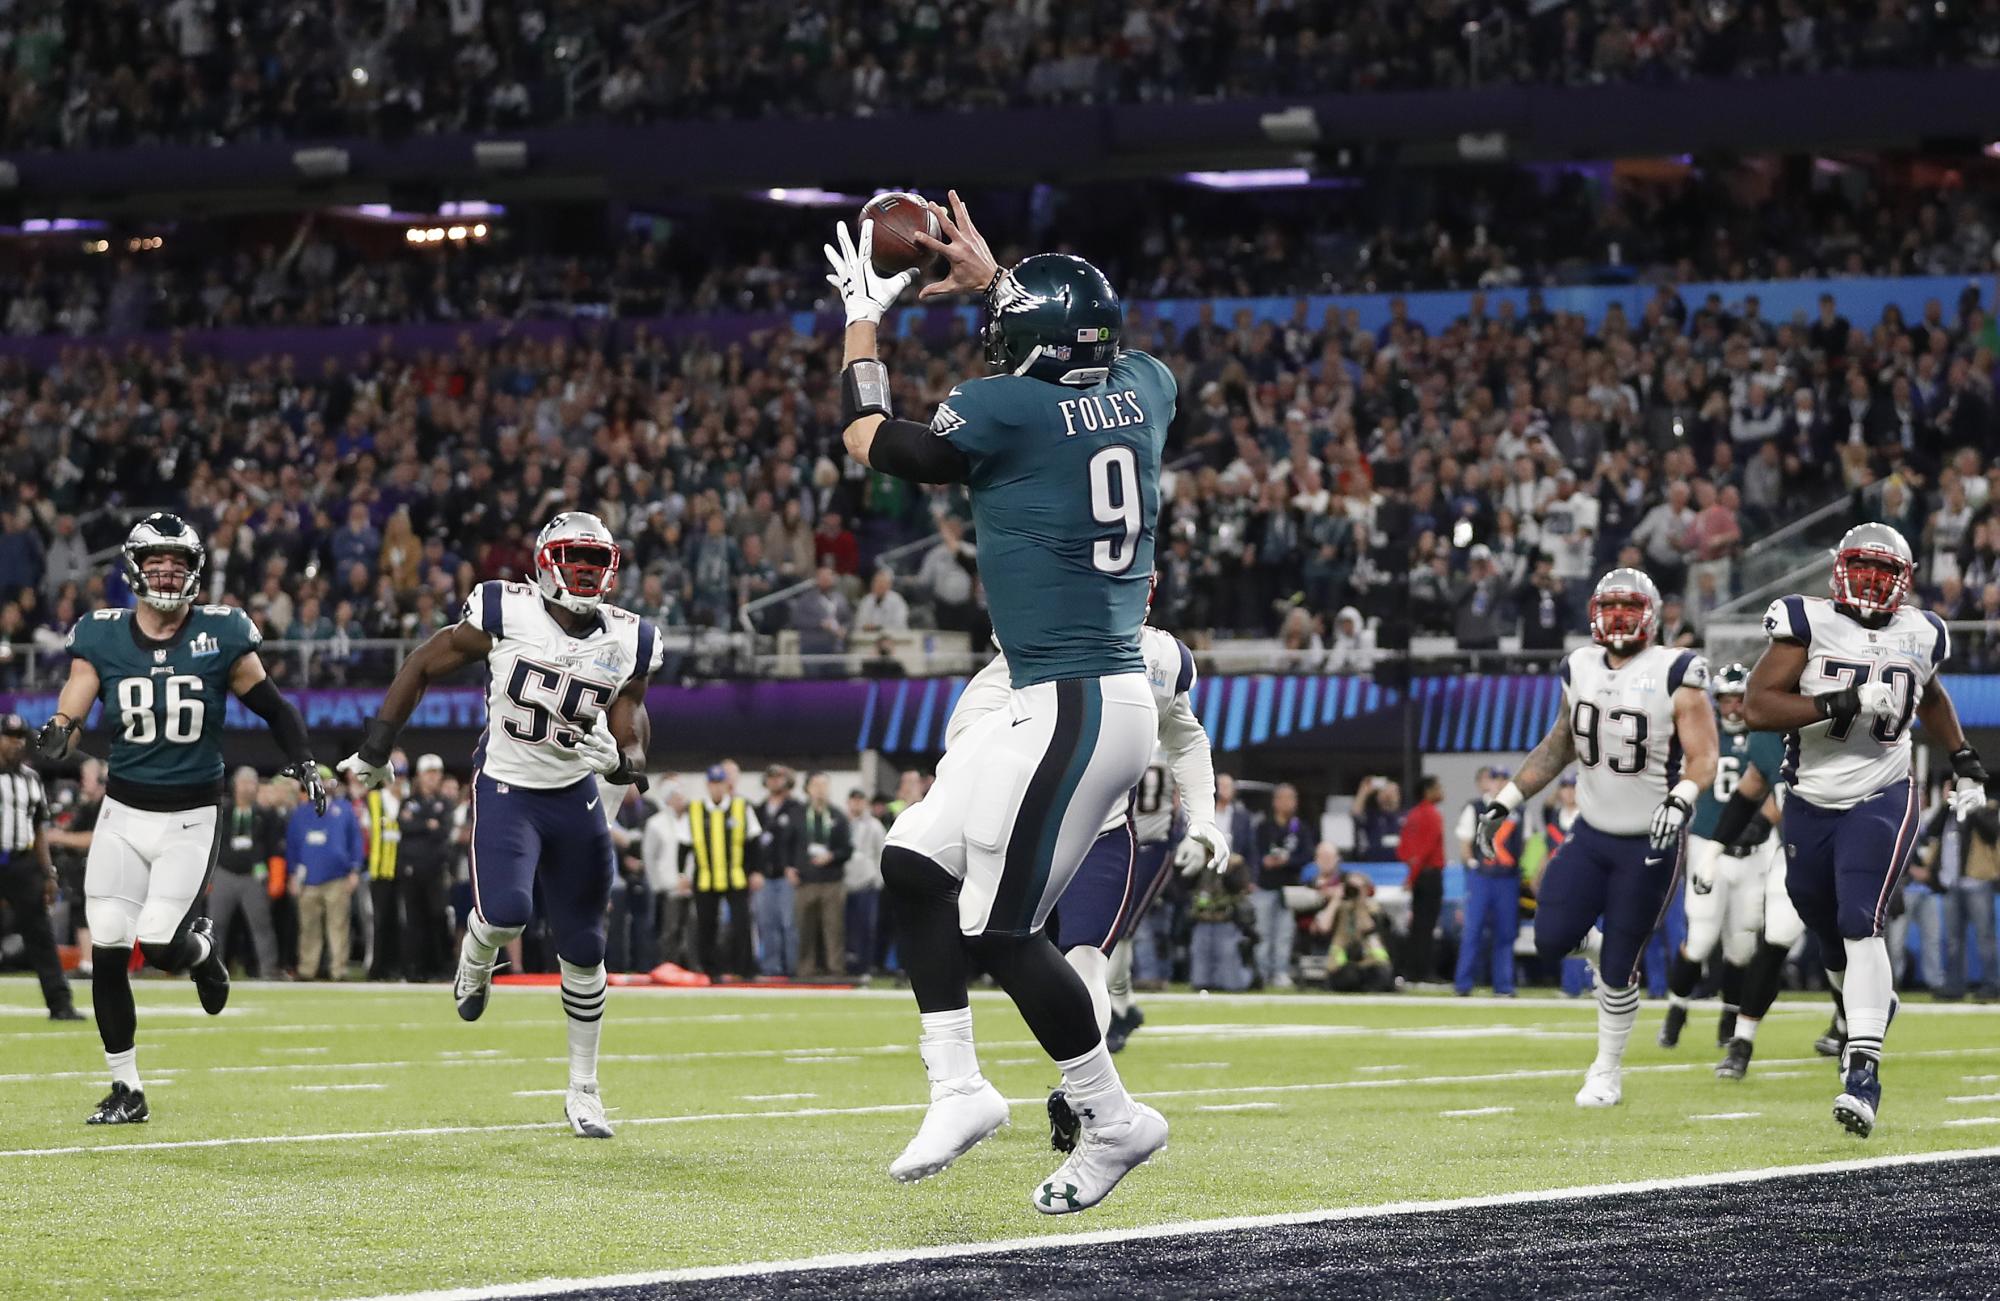 Nick Foles de los Philadelphia Eagles atrapa un pase de touchdown durante la primera mitad del partido de fútbol americano NFL Super Bowl 52 contra los New England Patriots el 4 de febrero de 2018 en Minneapolis.